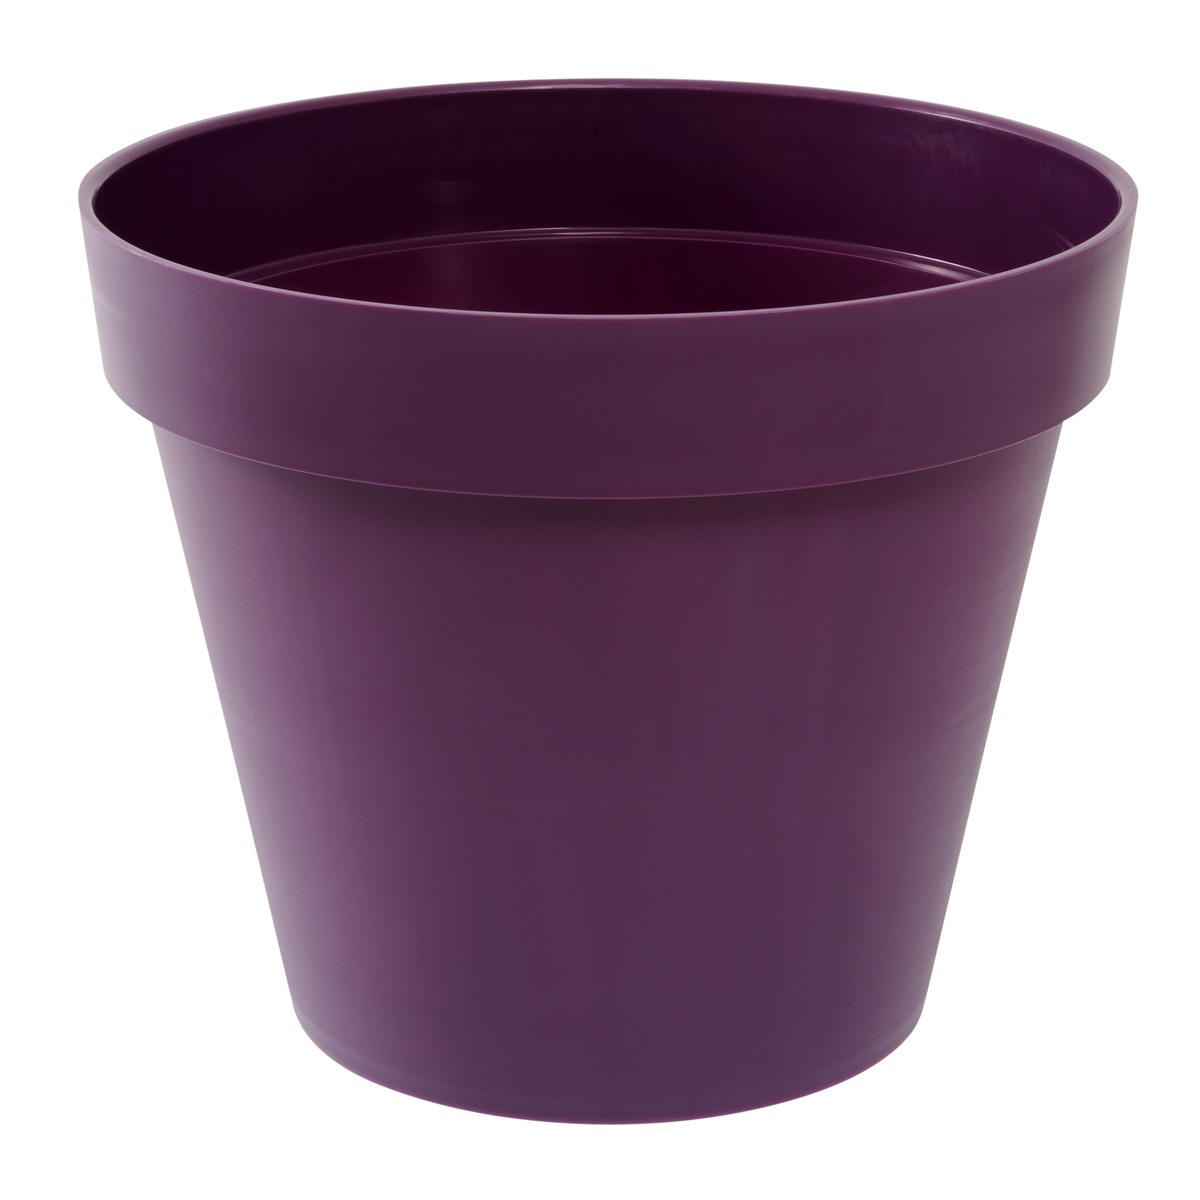 Pot en plastique - Diamètre 48 x H 40 cm - Violet aubergine